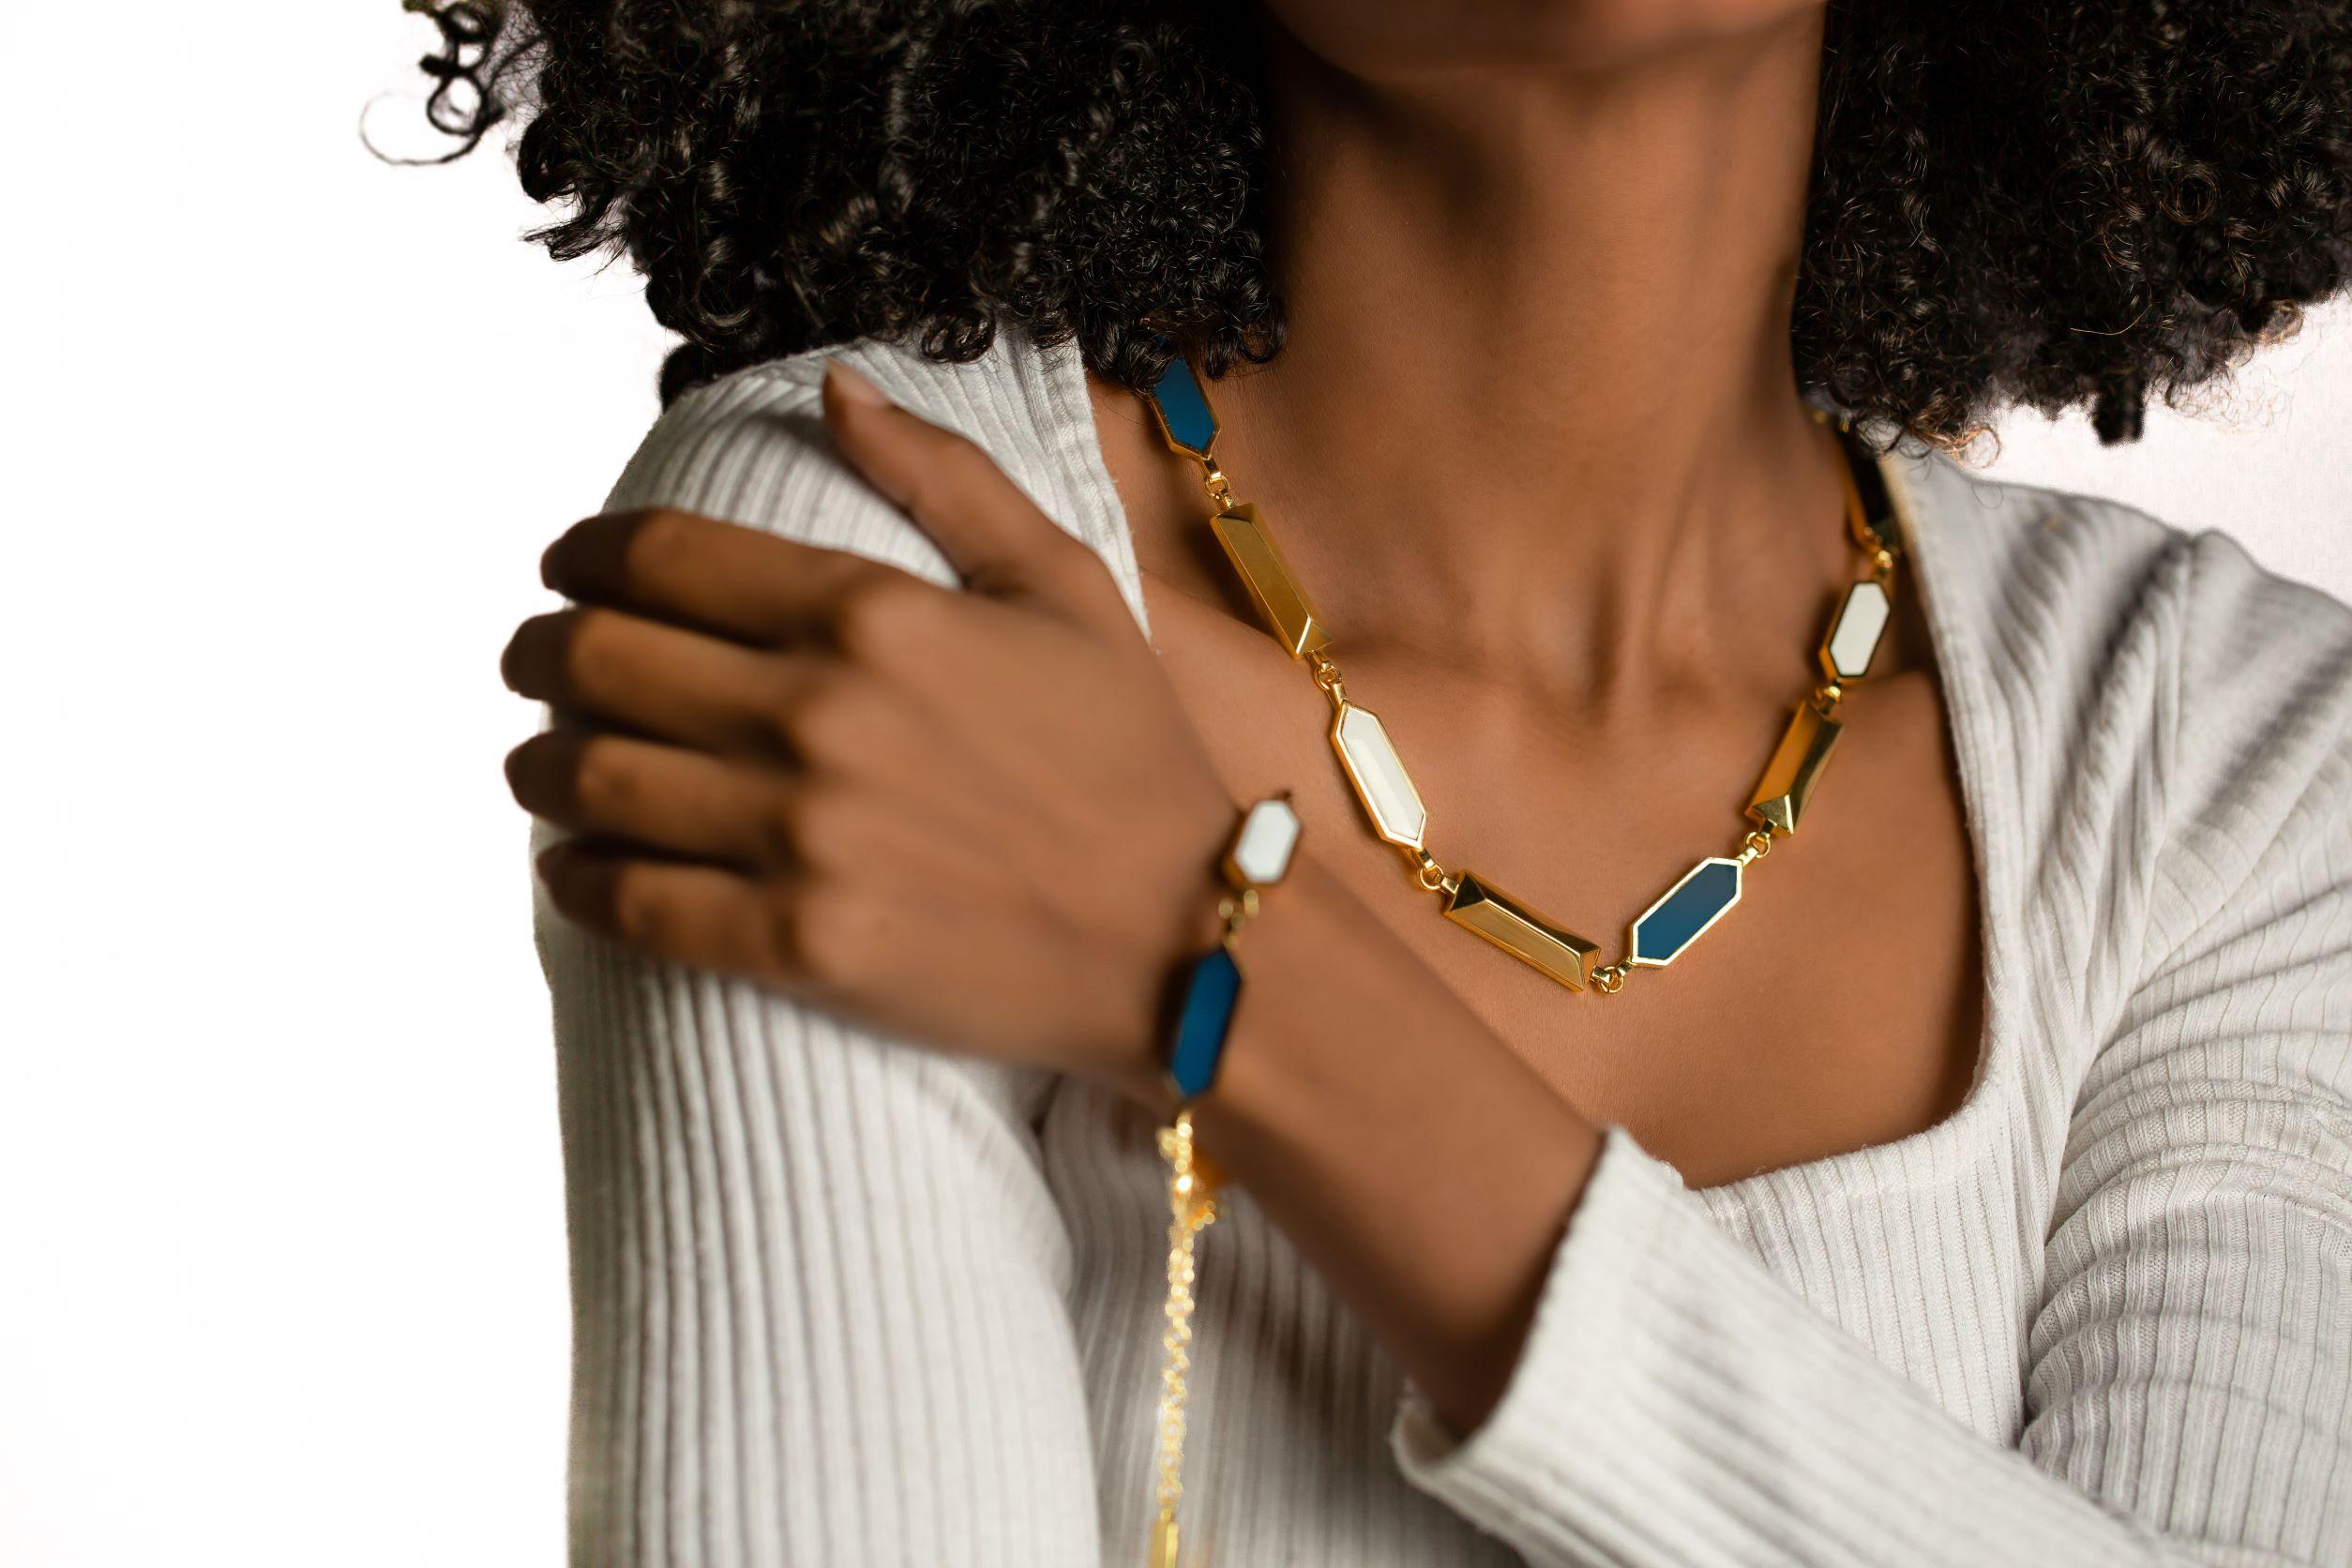 Diese aufwändig gefertigte Halskette aus exquisitem goldenem und durchscheinendem azurblauem Email ist eine harmonische Mischung aus Opulenz und Eleganz. Dieser bemerkenswerte Schmuck ist ein Beispiel für höchste handwerkliche Kunstfertigkeit und